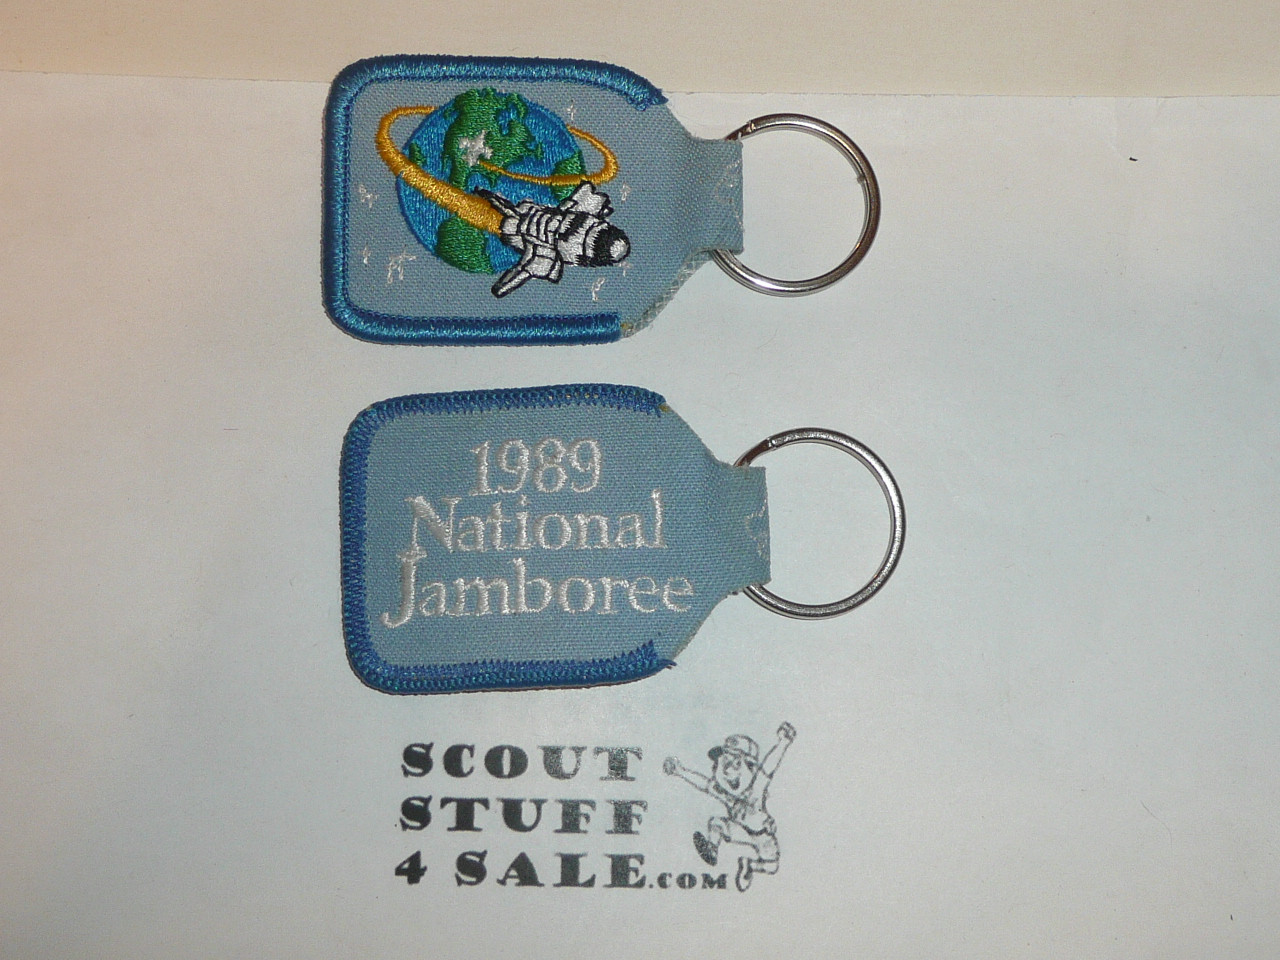 1989 National Jamboree key chain